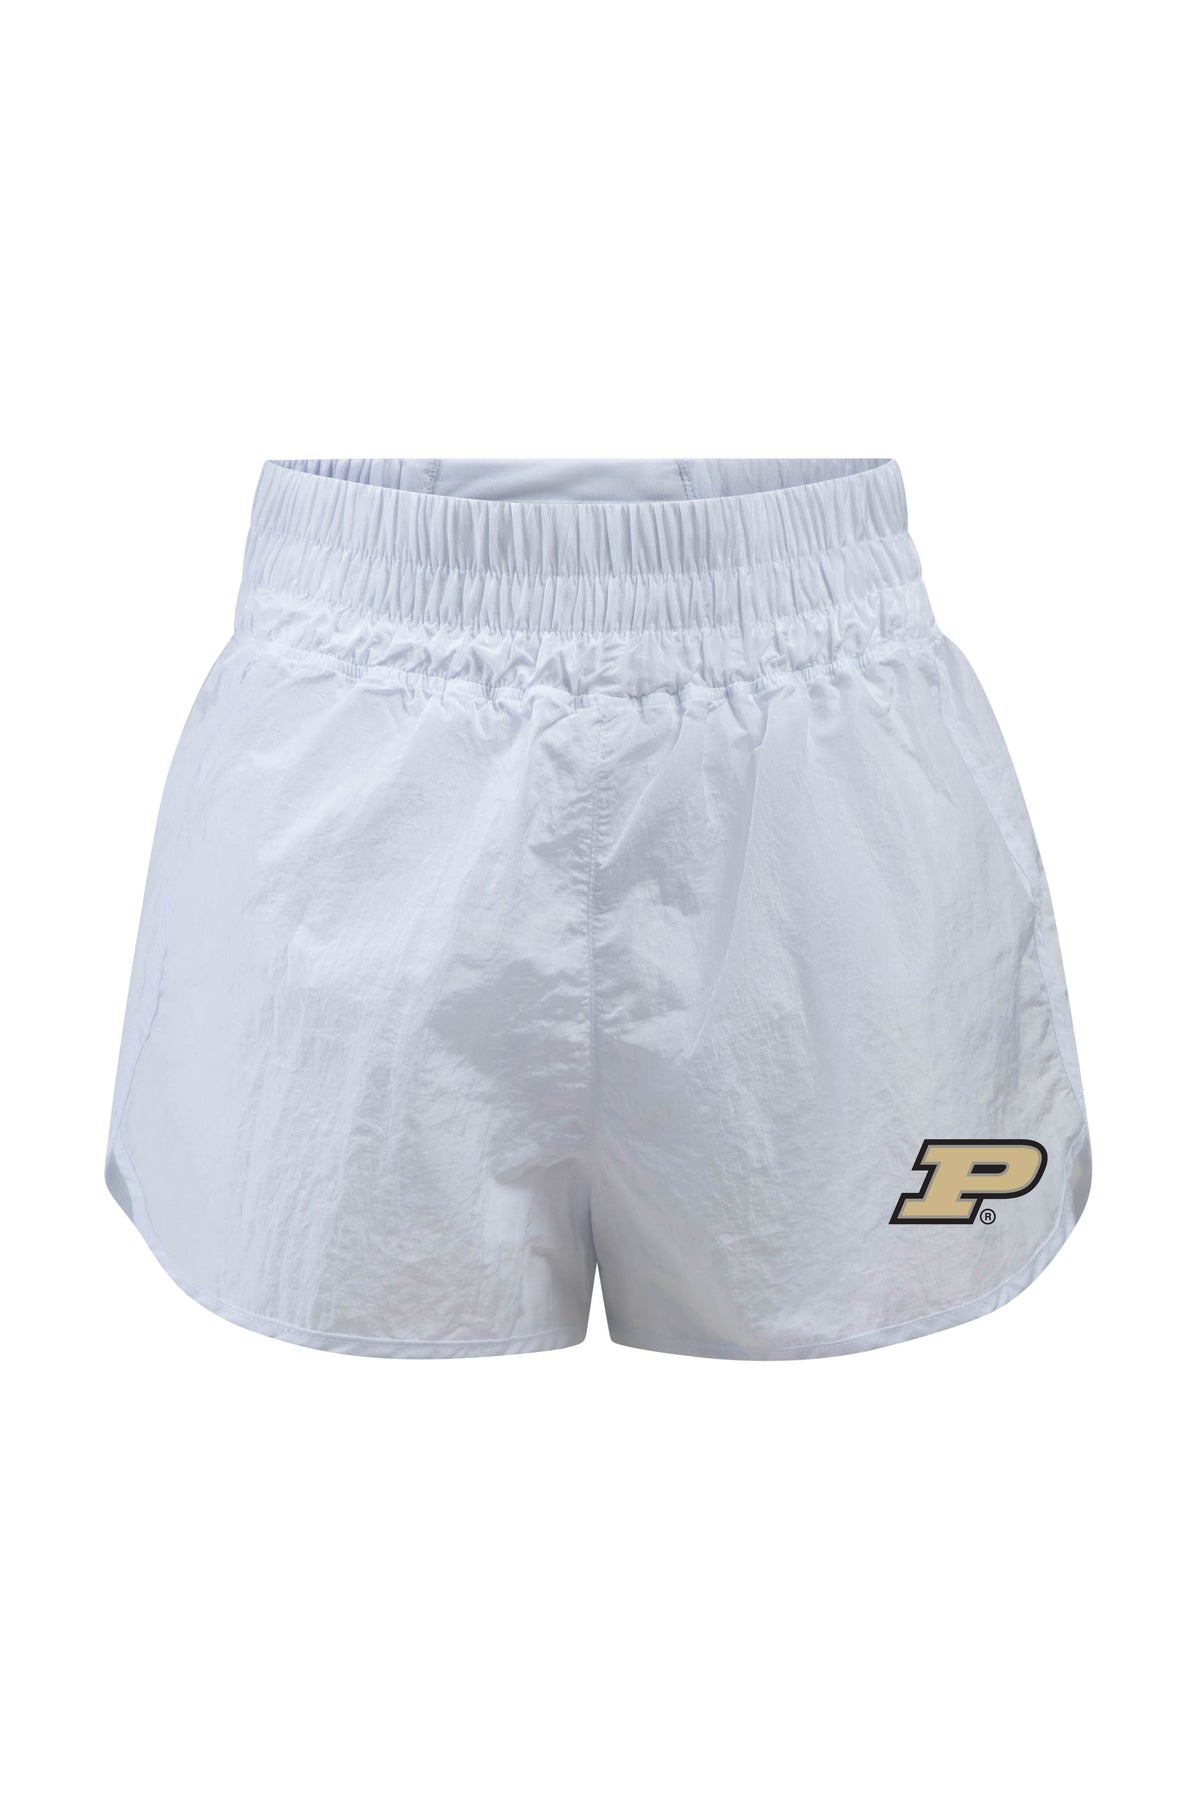 Purdue University Boxer Short